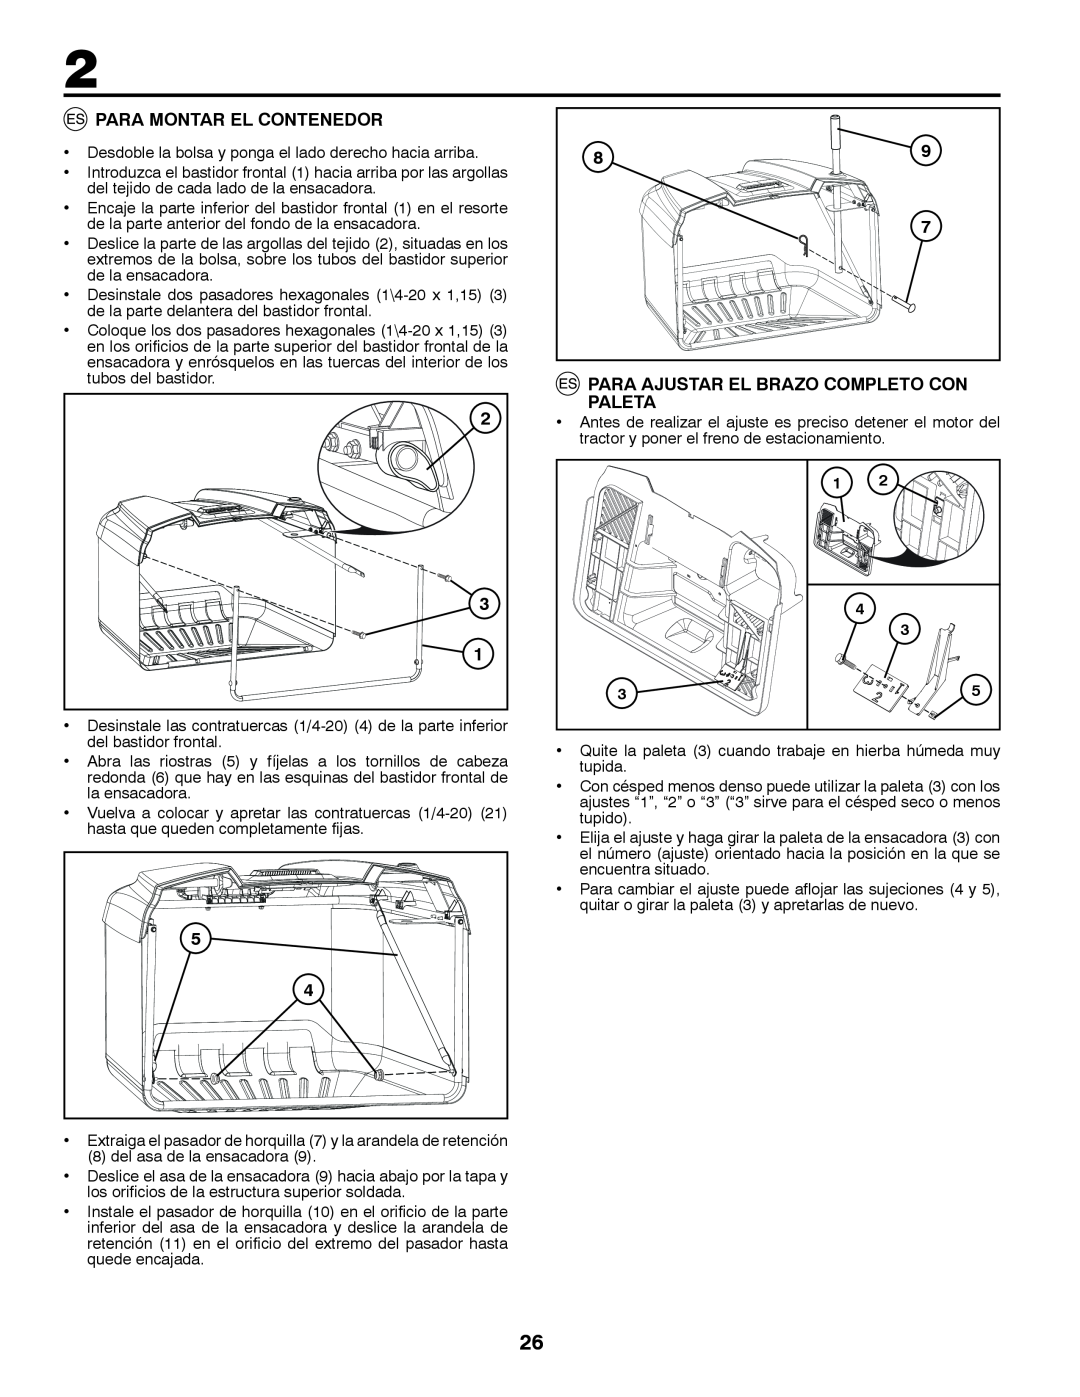 McCulloch 96041016500 instruction manual Para Montar El Contenedor, Para Ajustar El Brazo Completo Con Paleta 